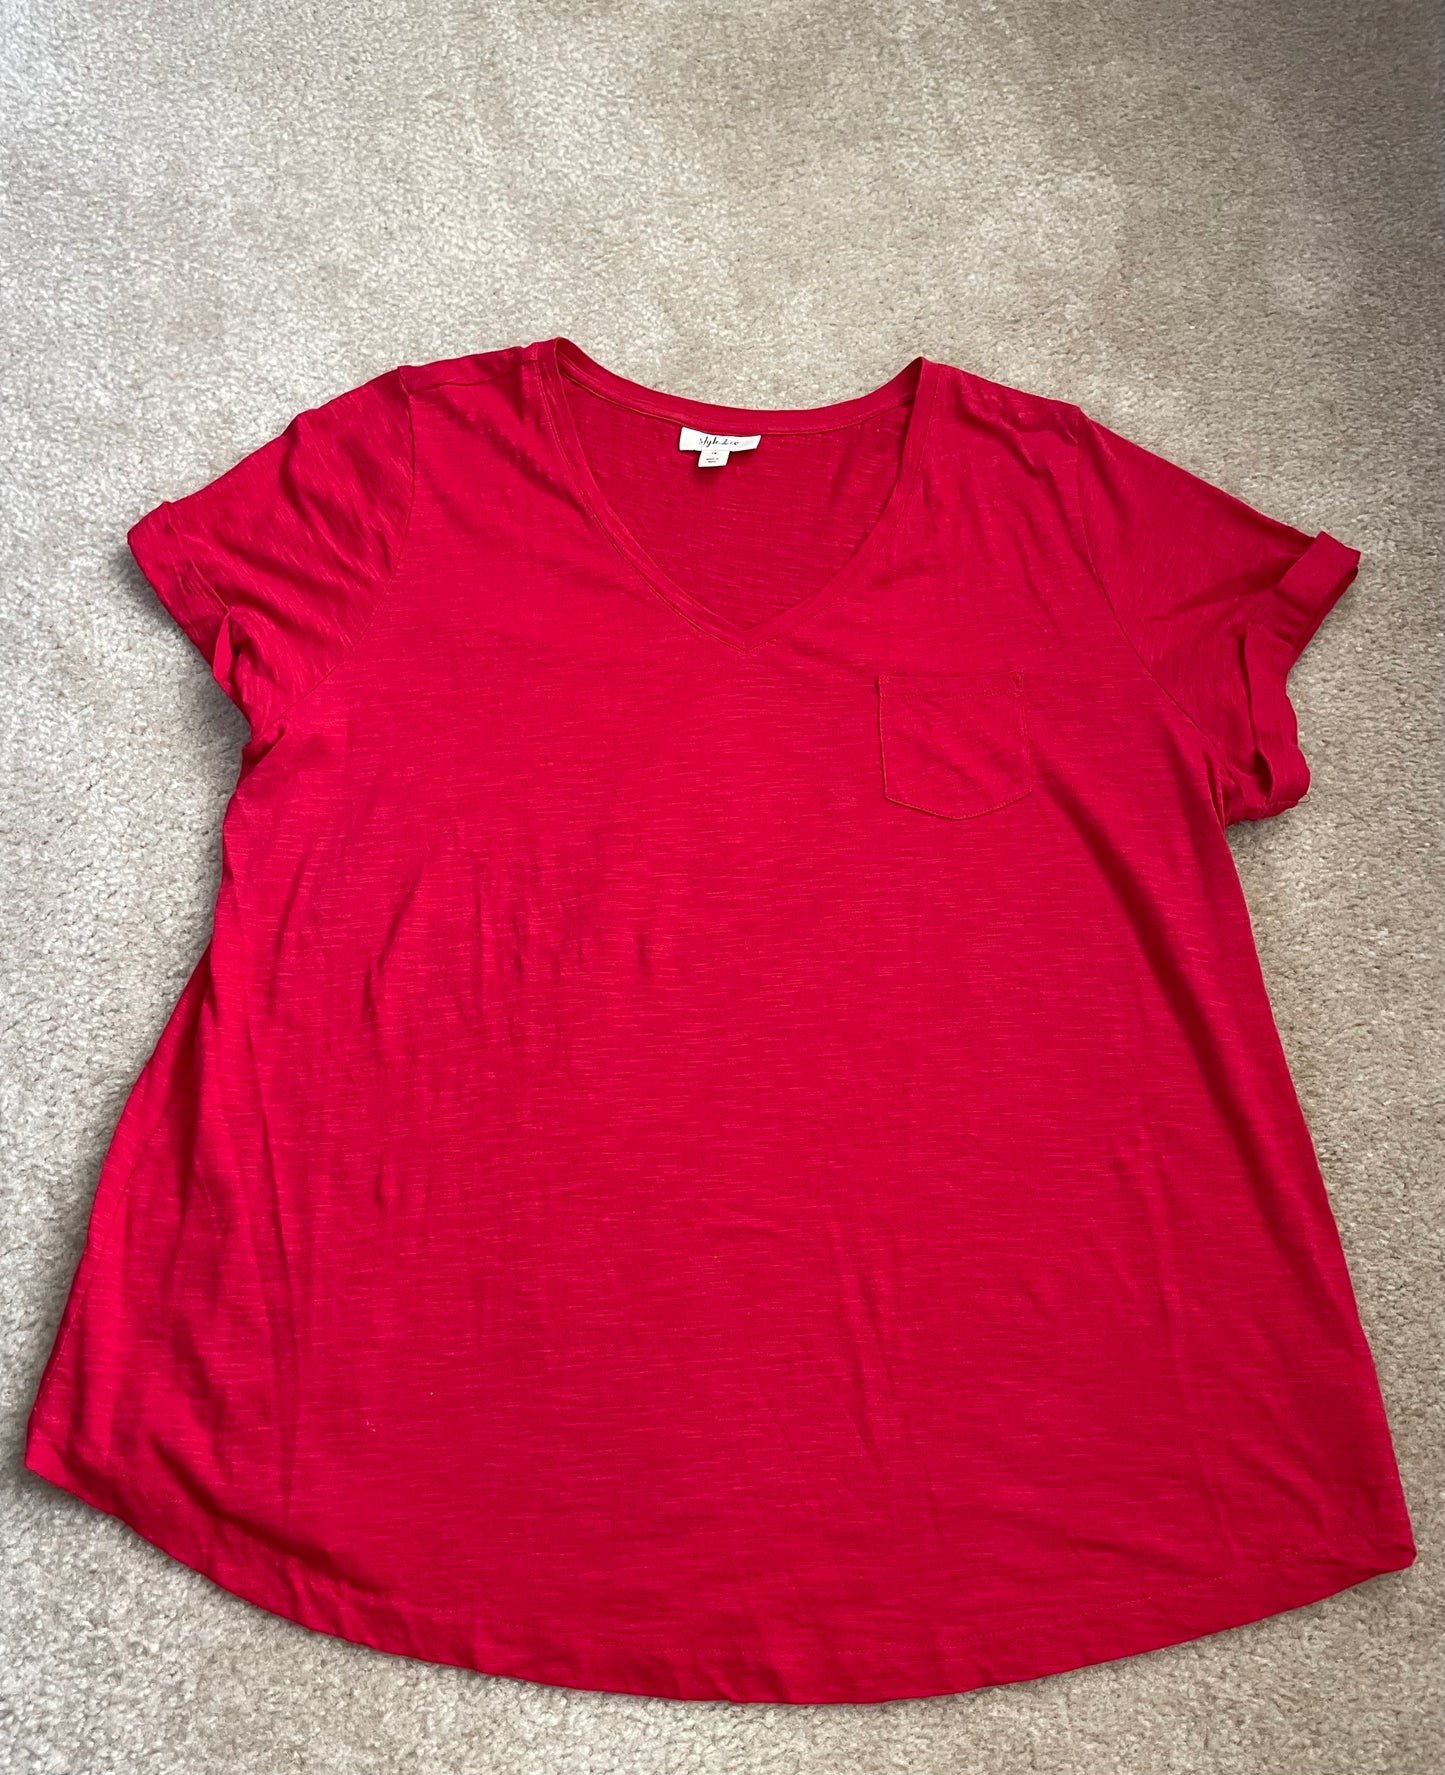 Style & Co women’s 1X red shirt shirt